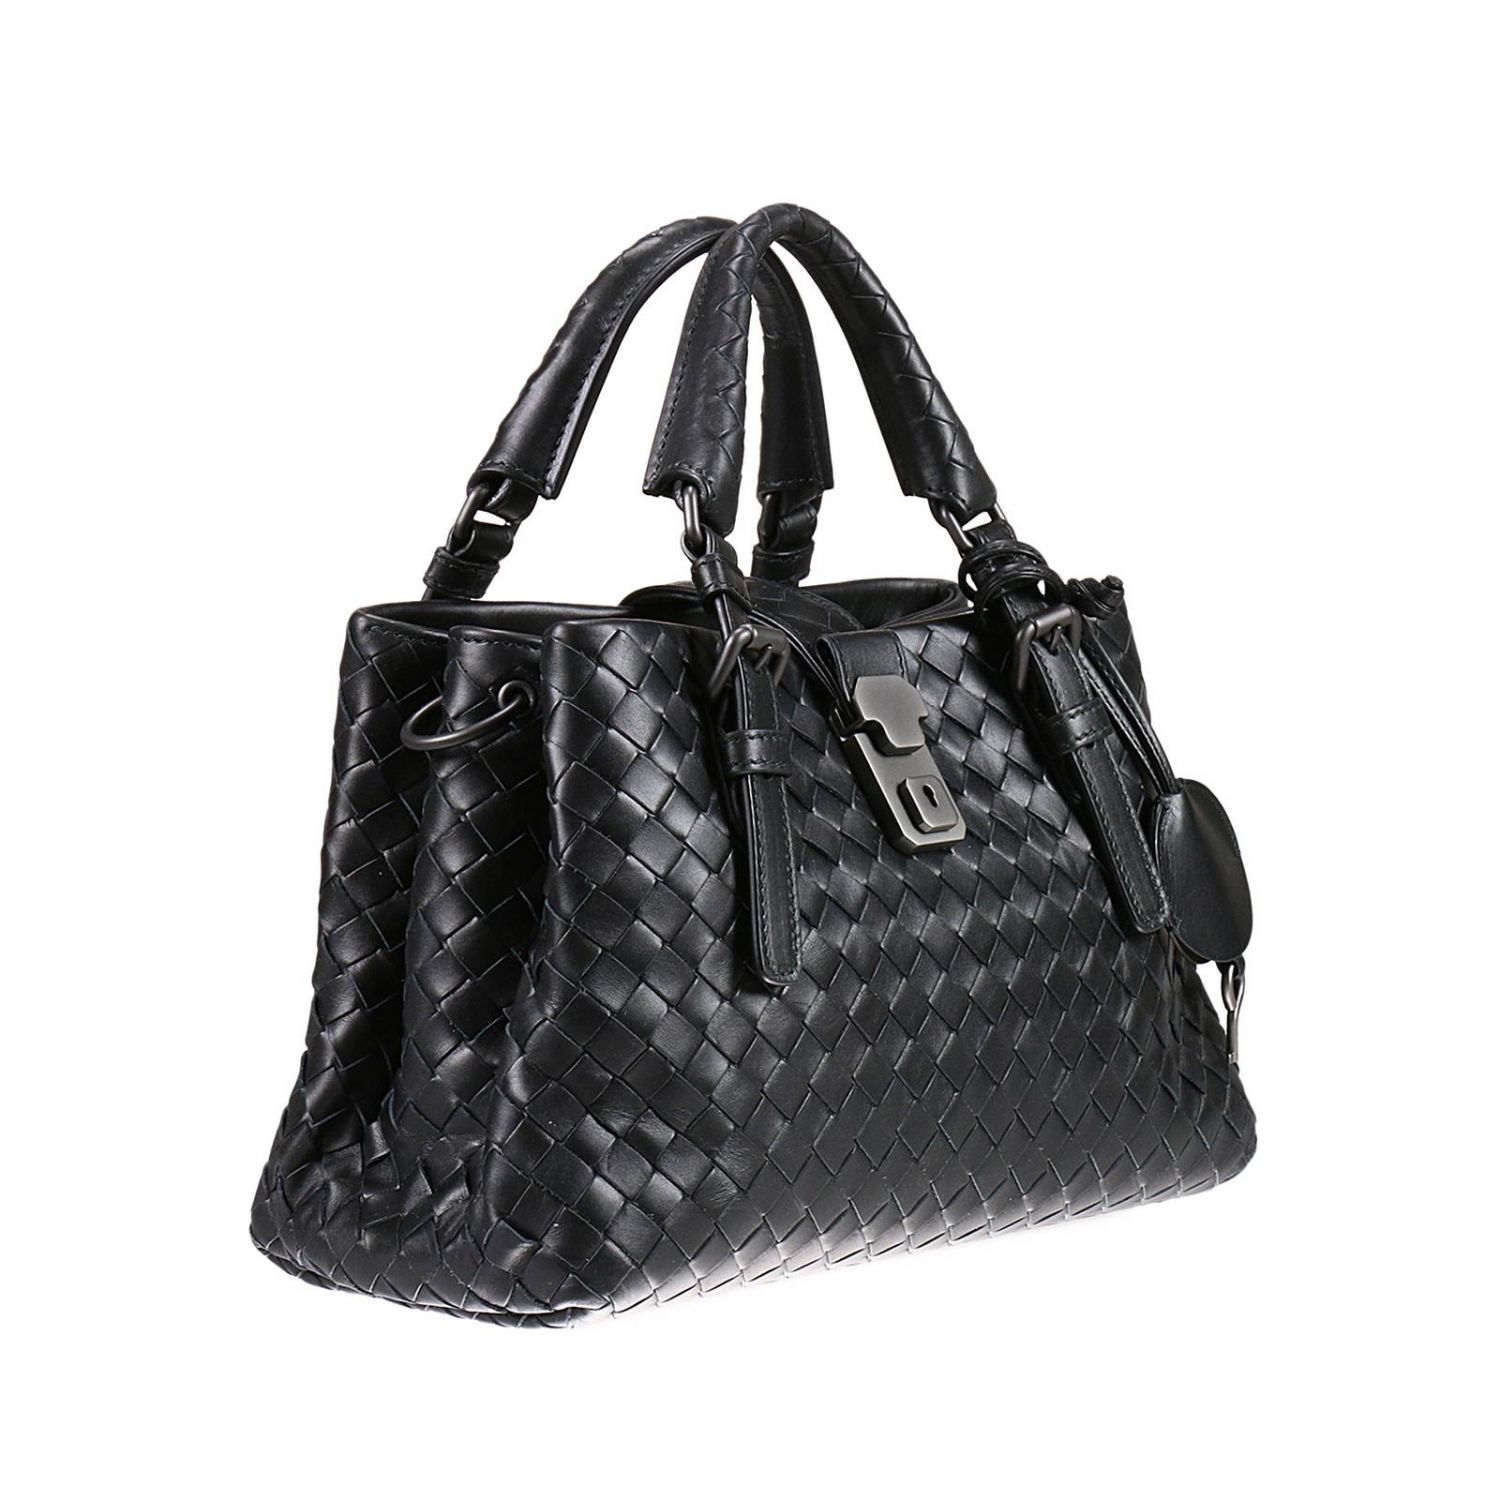 BOTTEGA VENETA: Handbag woman | Handbag Bottega Veneta Women Black ...